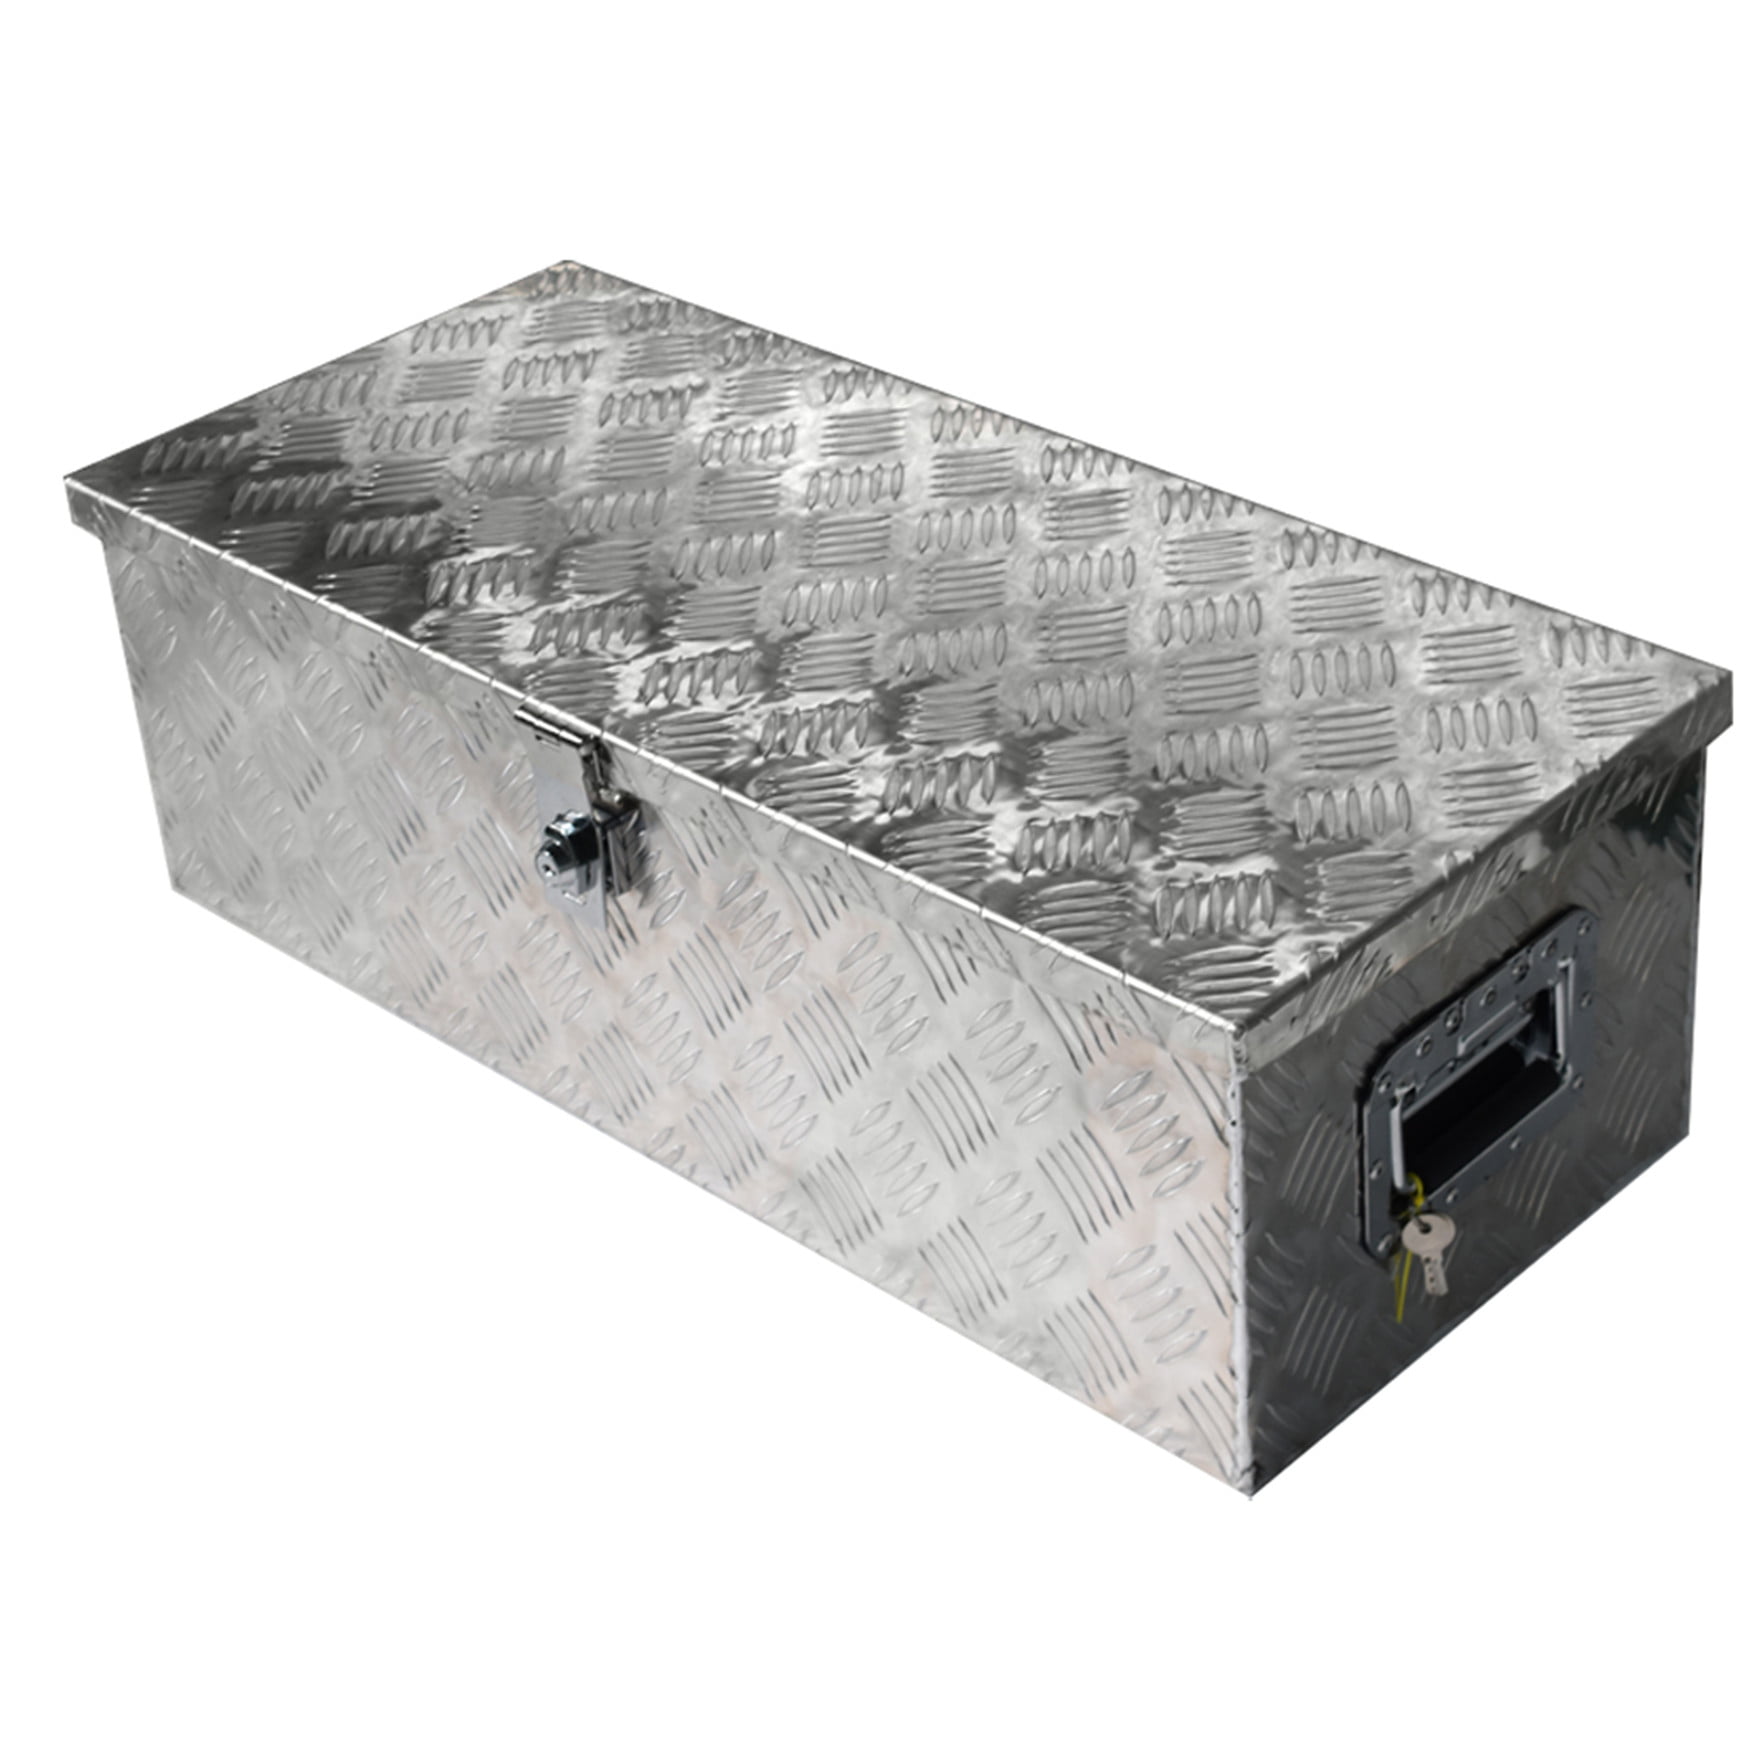 L x W x H / cm 30 x 13 x 10 MOTORHOT 30 Aluminum Diamond Plate Tool Box Pick Up Truck Bed RV Trailer Underbody Toolbox Storage Lock with Keys 76.2 x 33.02 x 25.4 